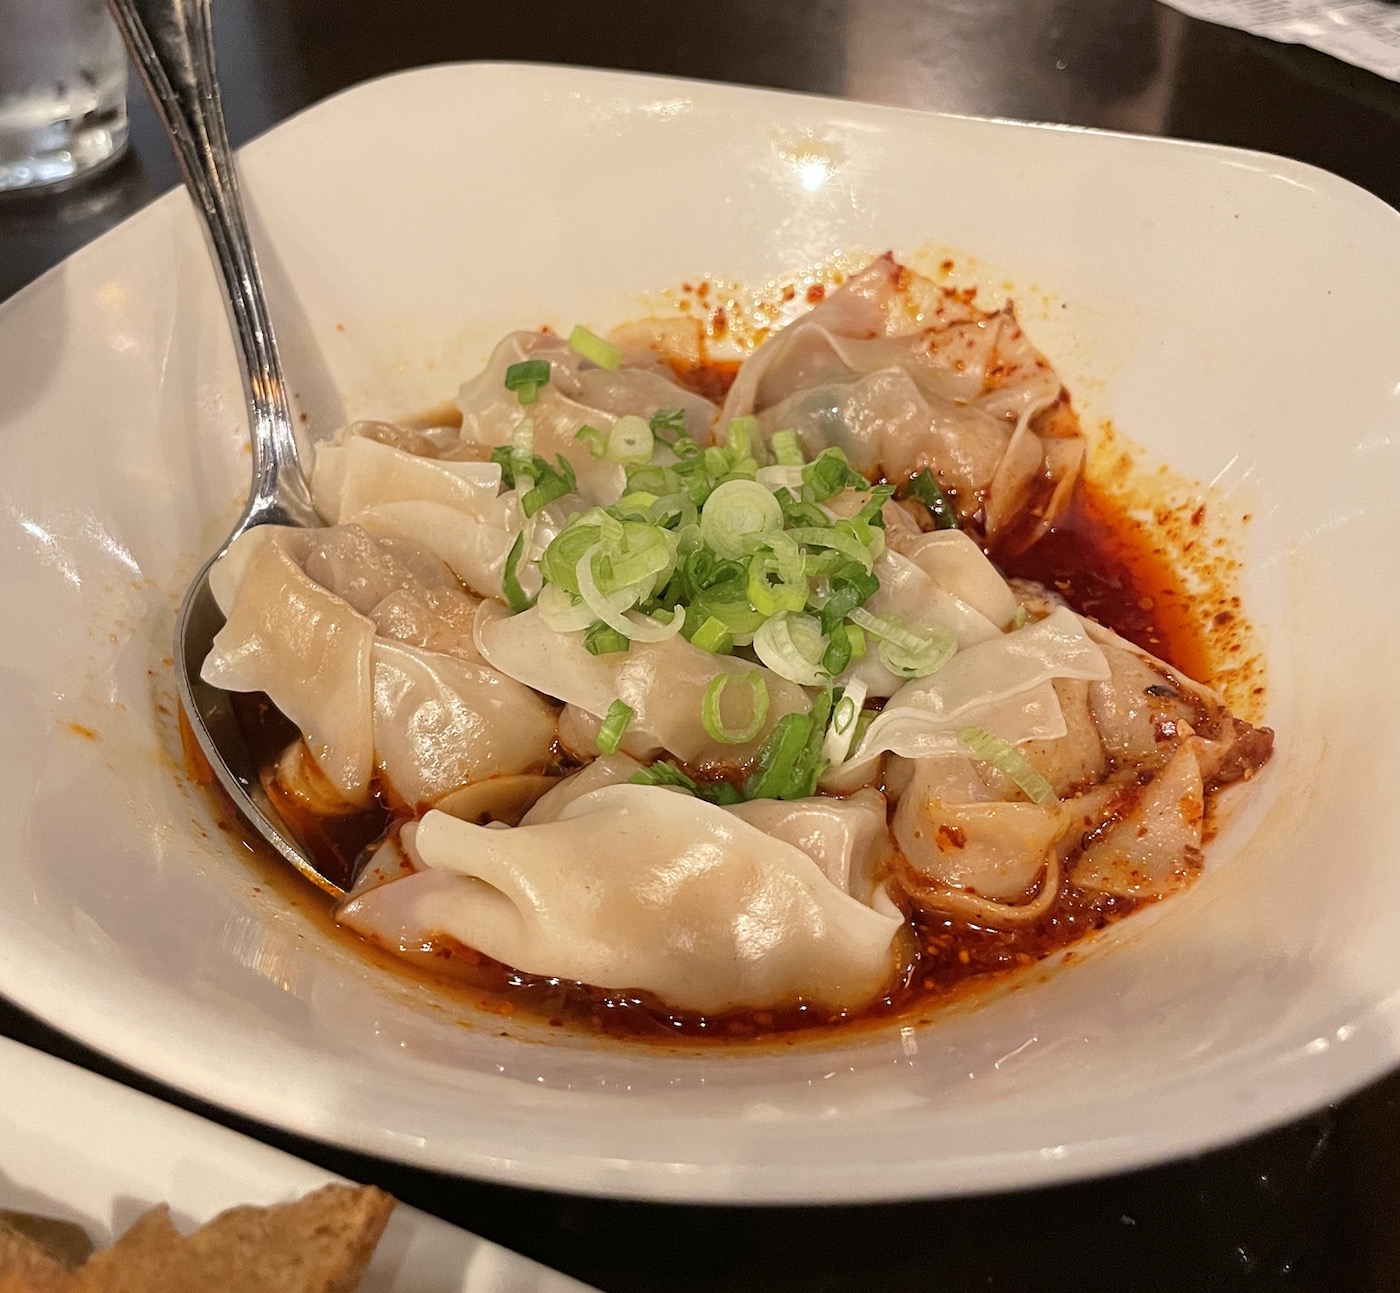 Din Tai Fung Shrimp and Kurubota Pork Wontons with Spicy Sauce